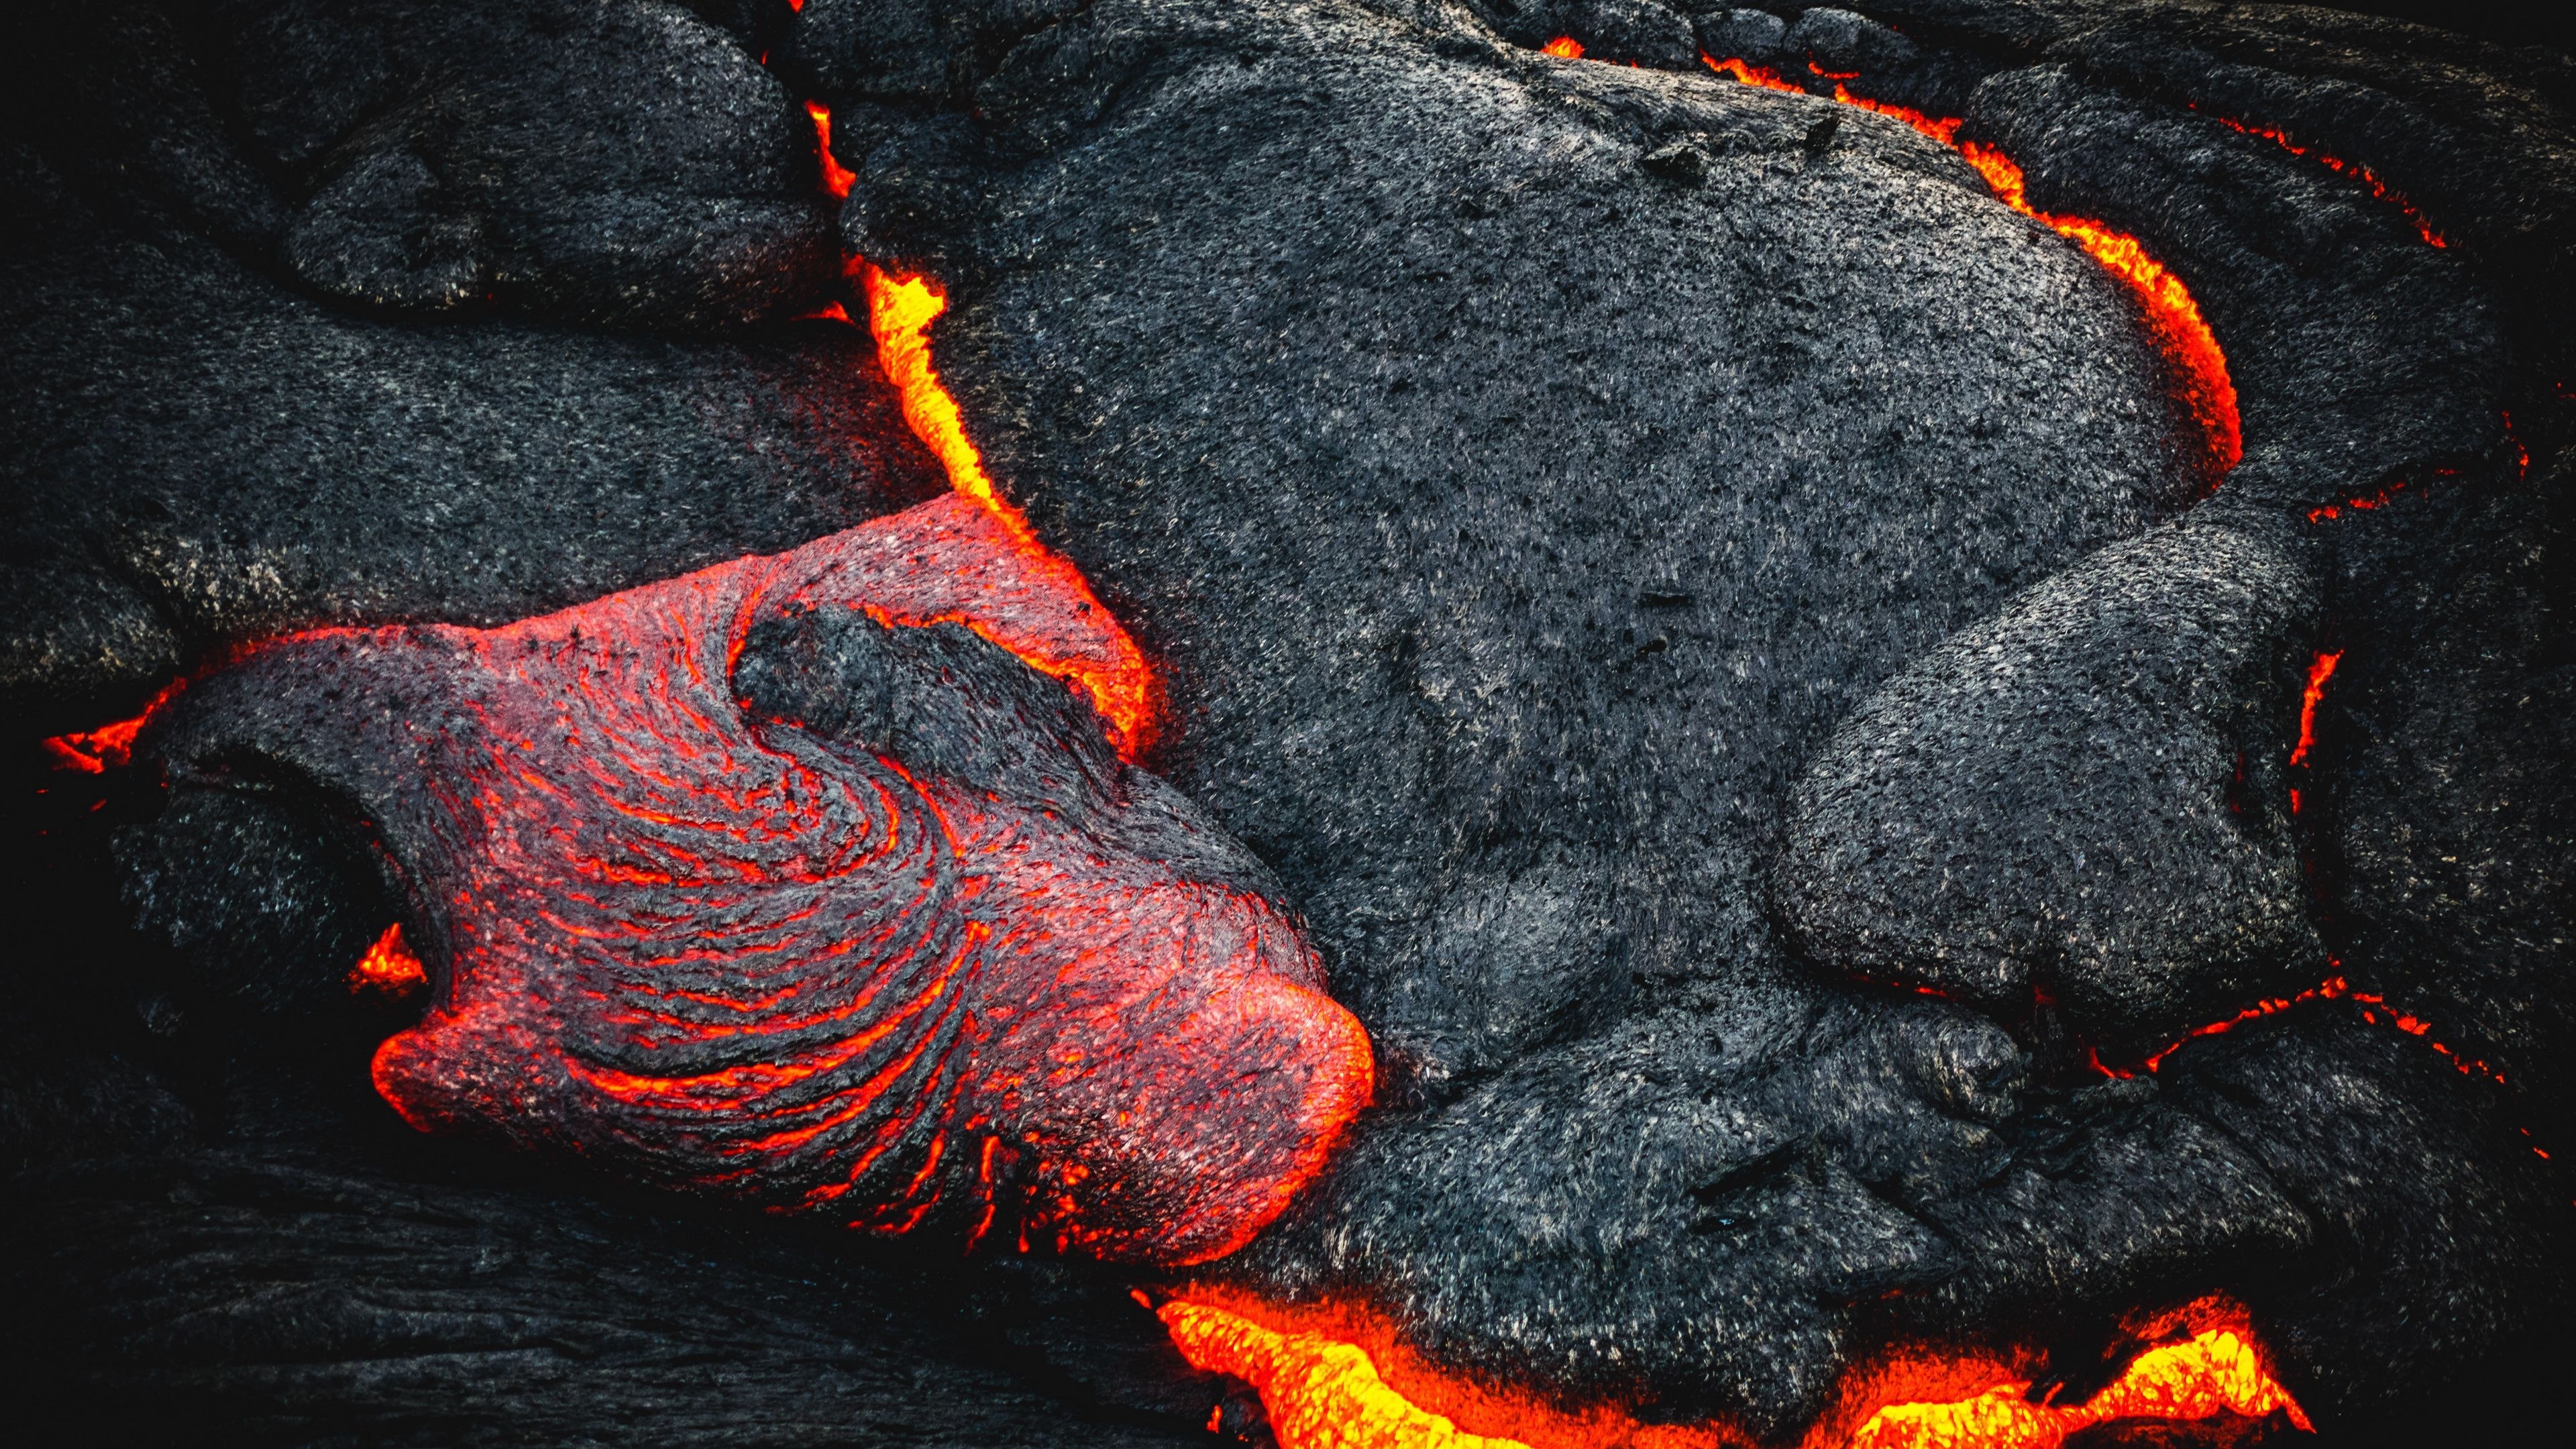 Scorching molten rock, Volcanic activity, Erupting volcano, Stunning fiery display, 3840x2160 4K Desktop